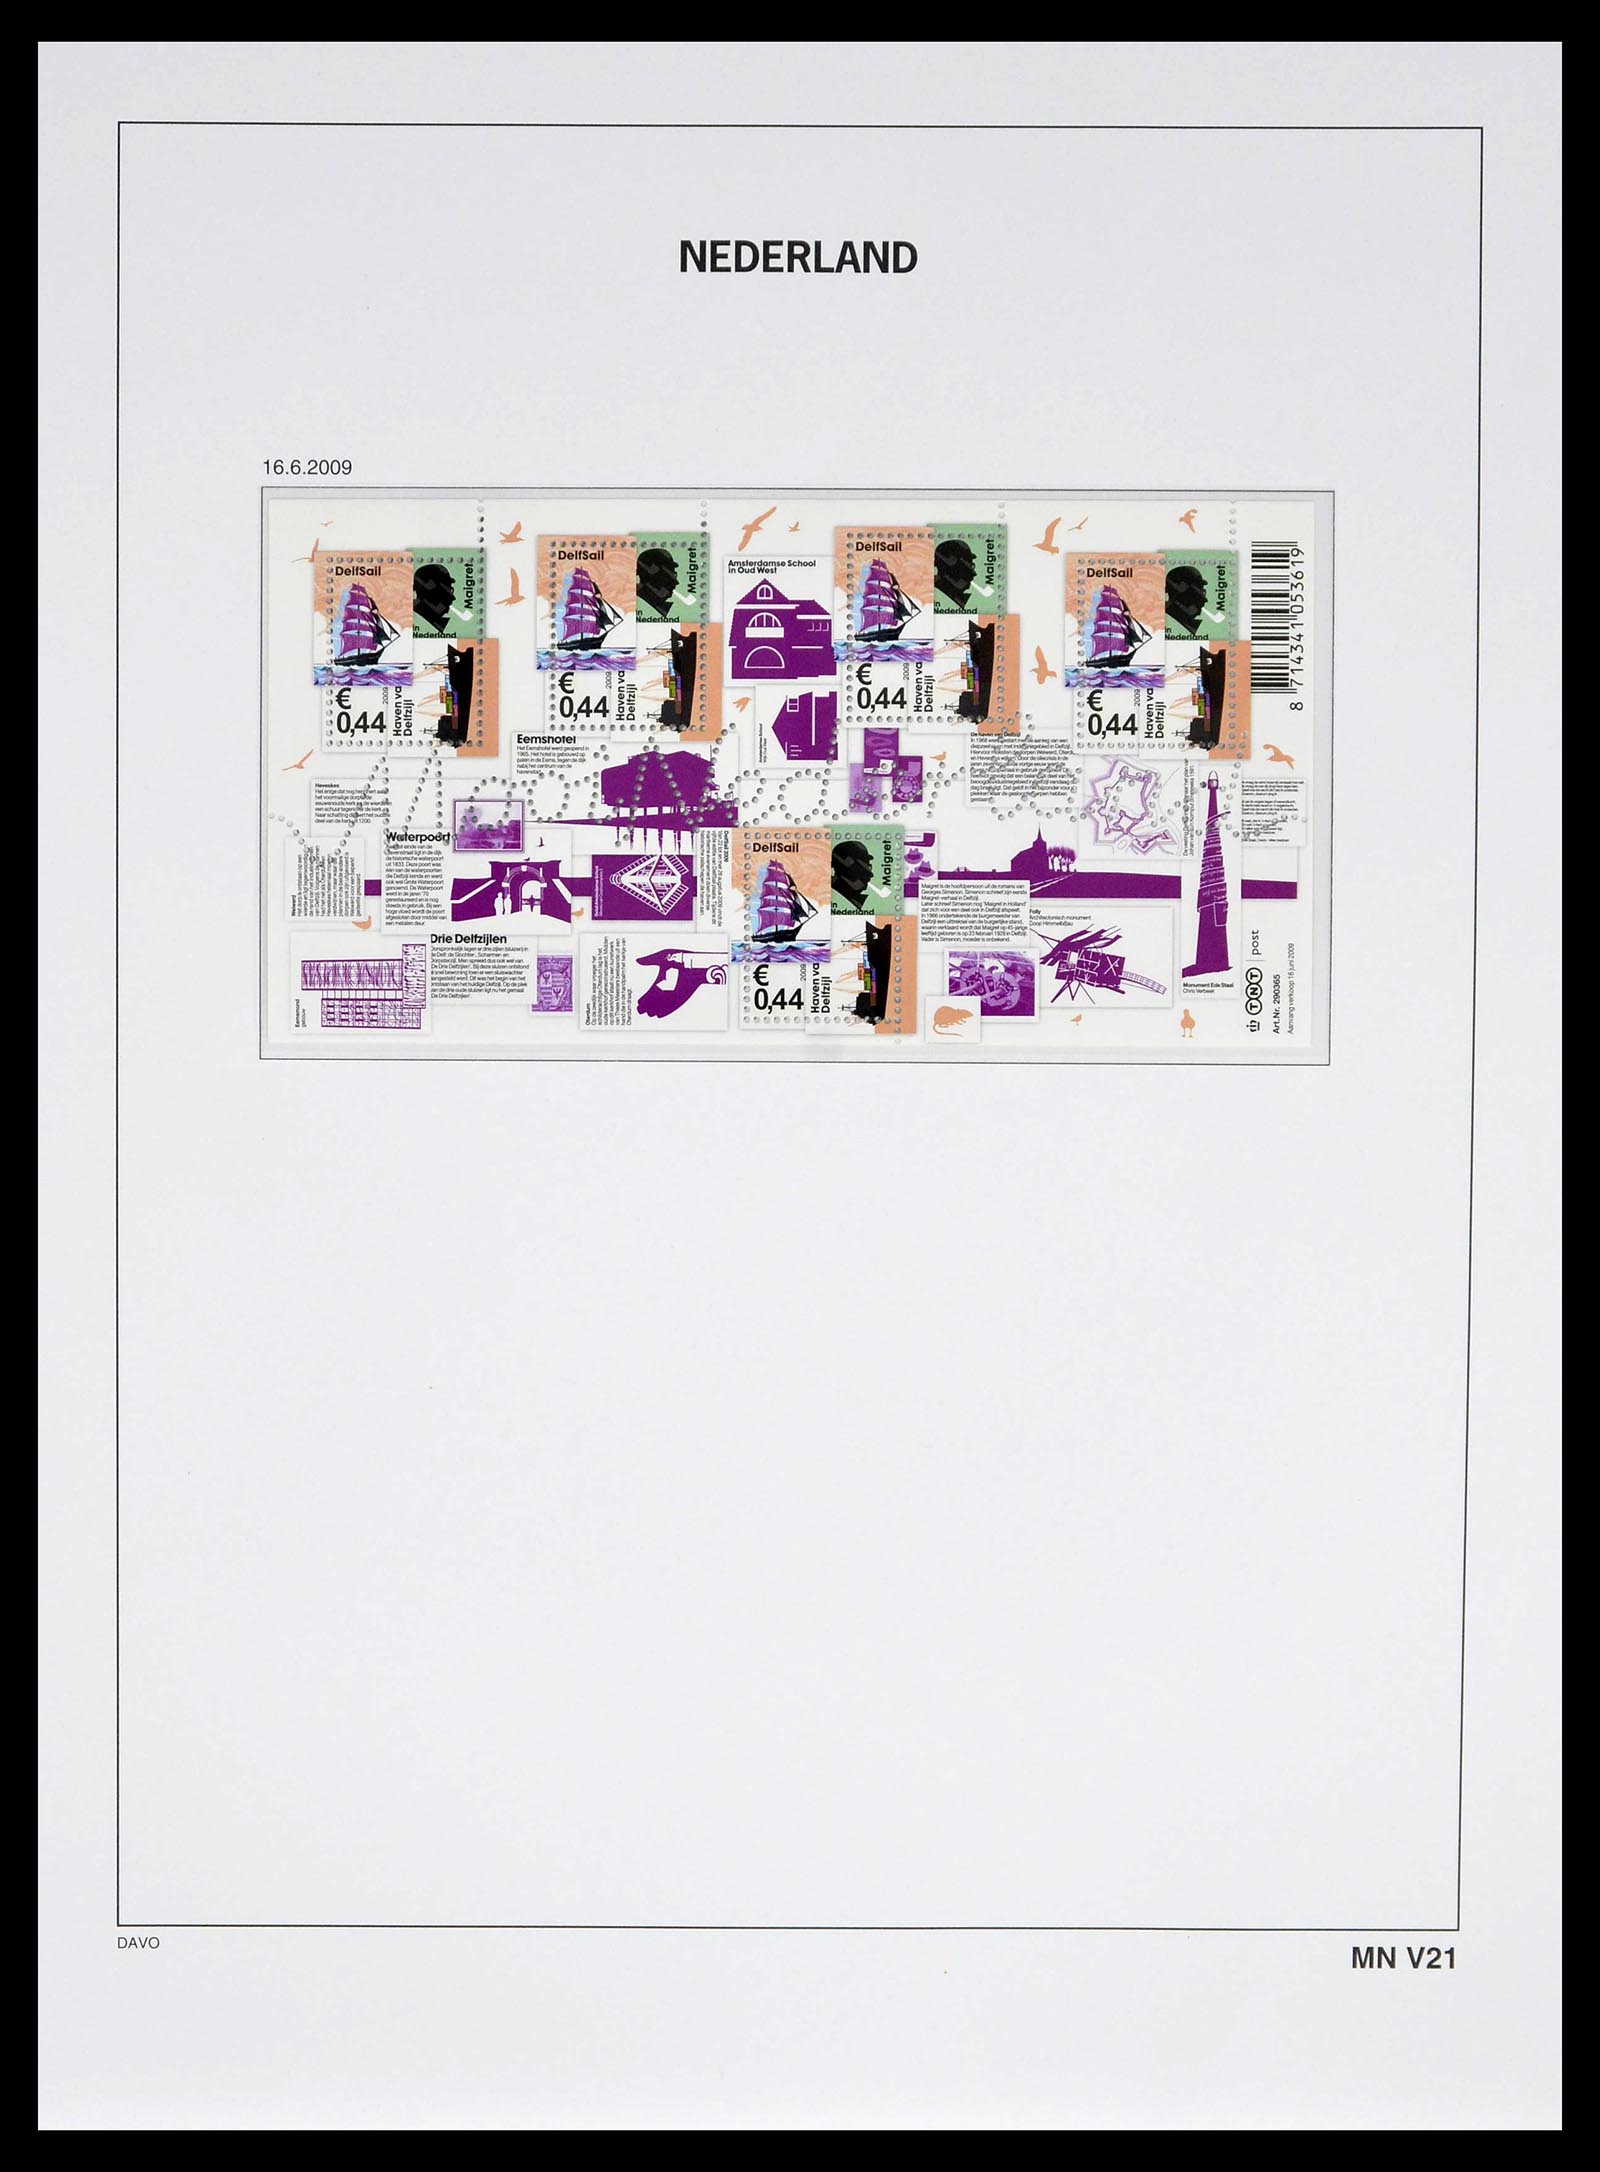 39134 0240 - Stamp collection 39134 Netherlands sheetlets 1992-2019!